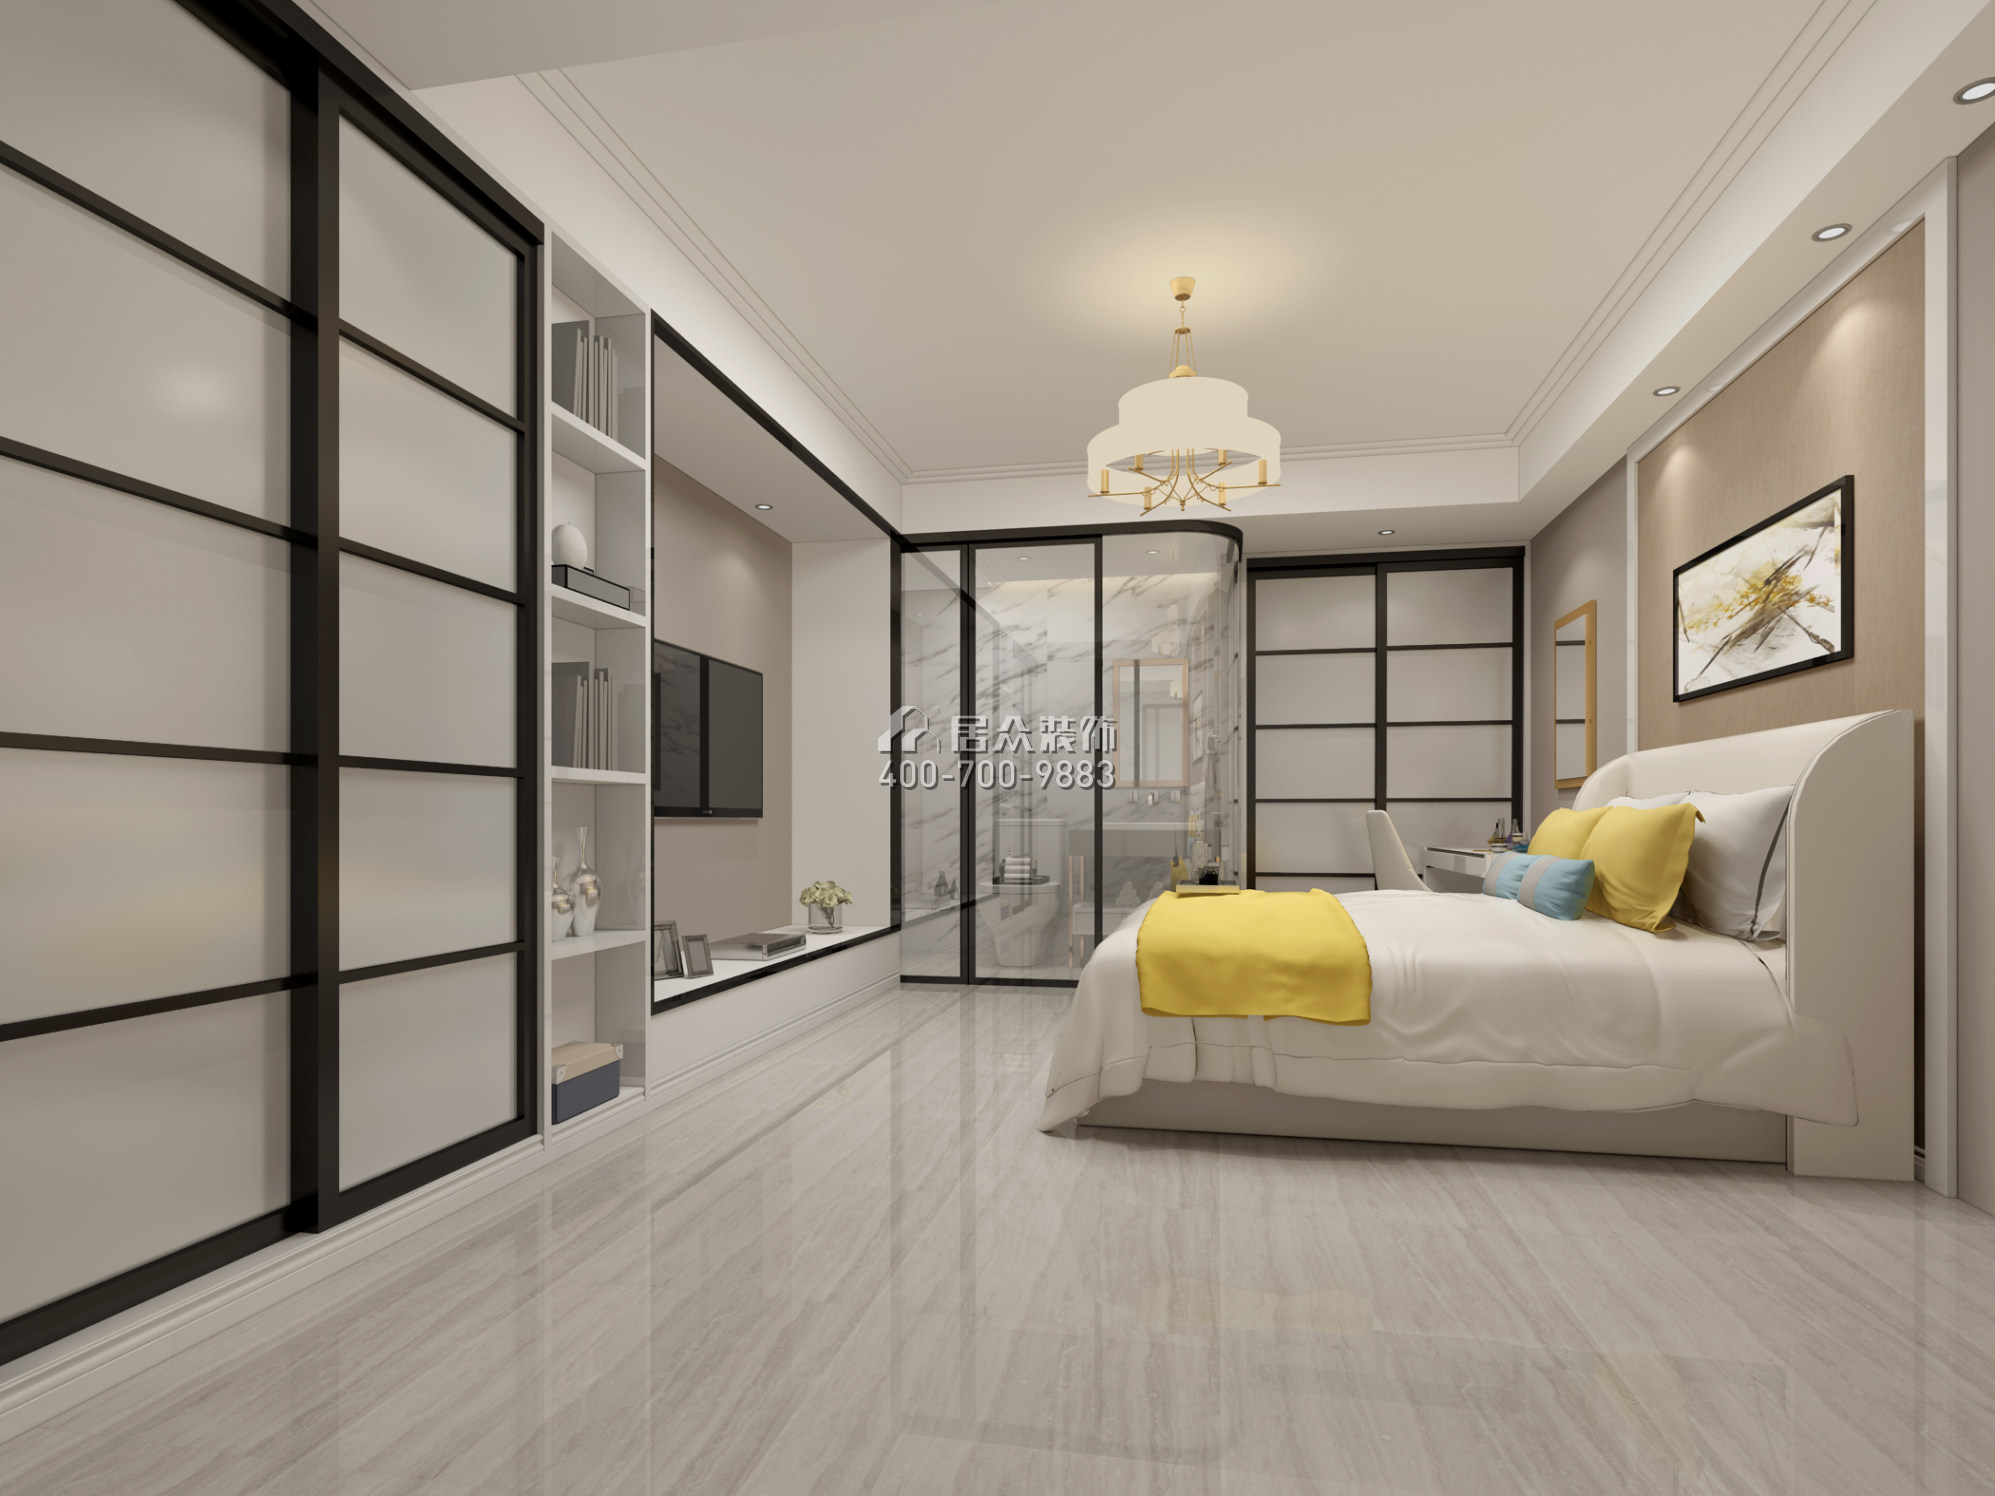 晨暉家園89平方米現代簡約風格平層戶型臥室裝修效果圖